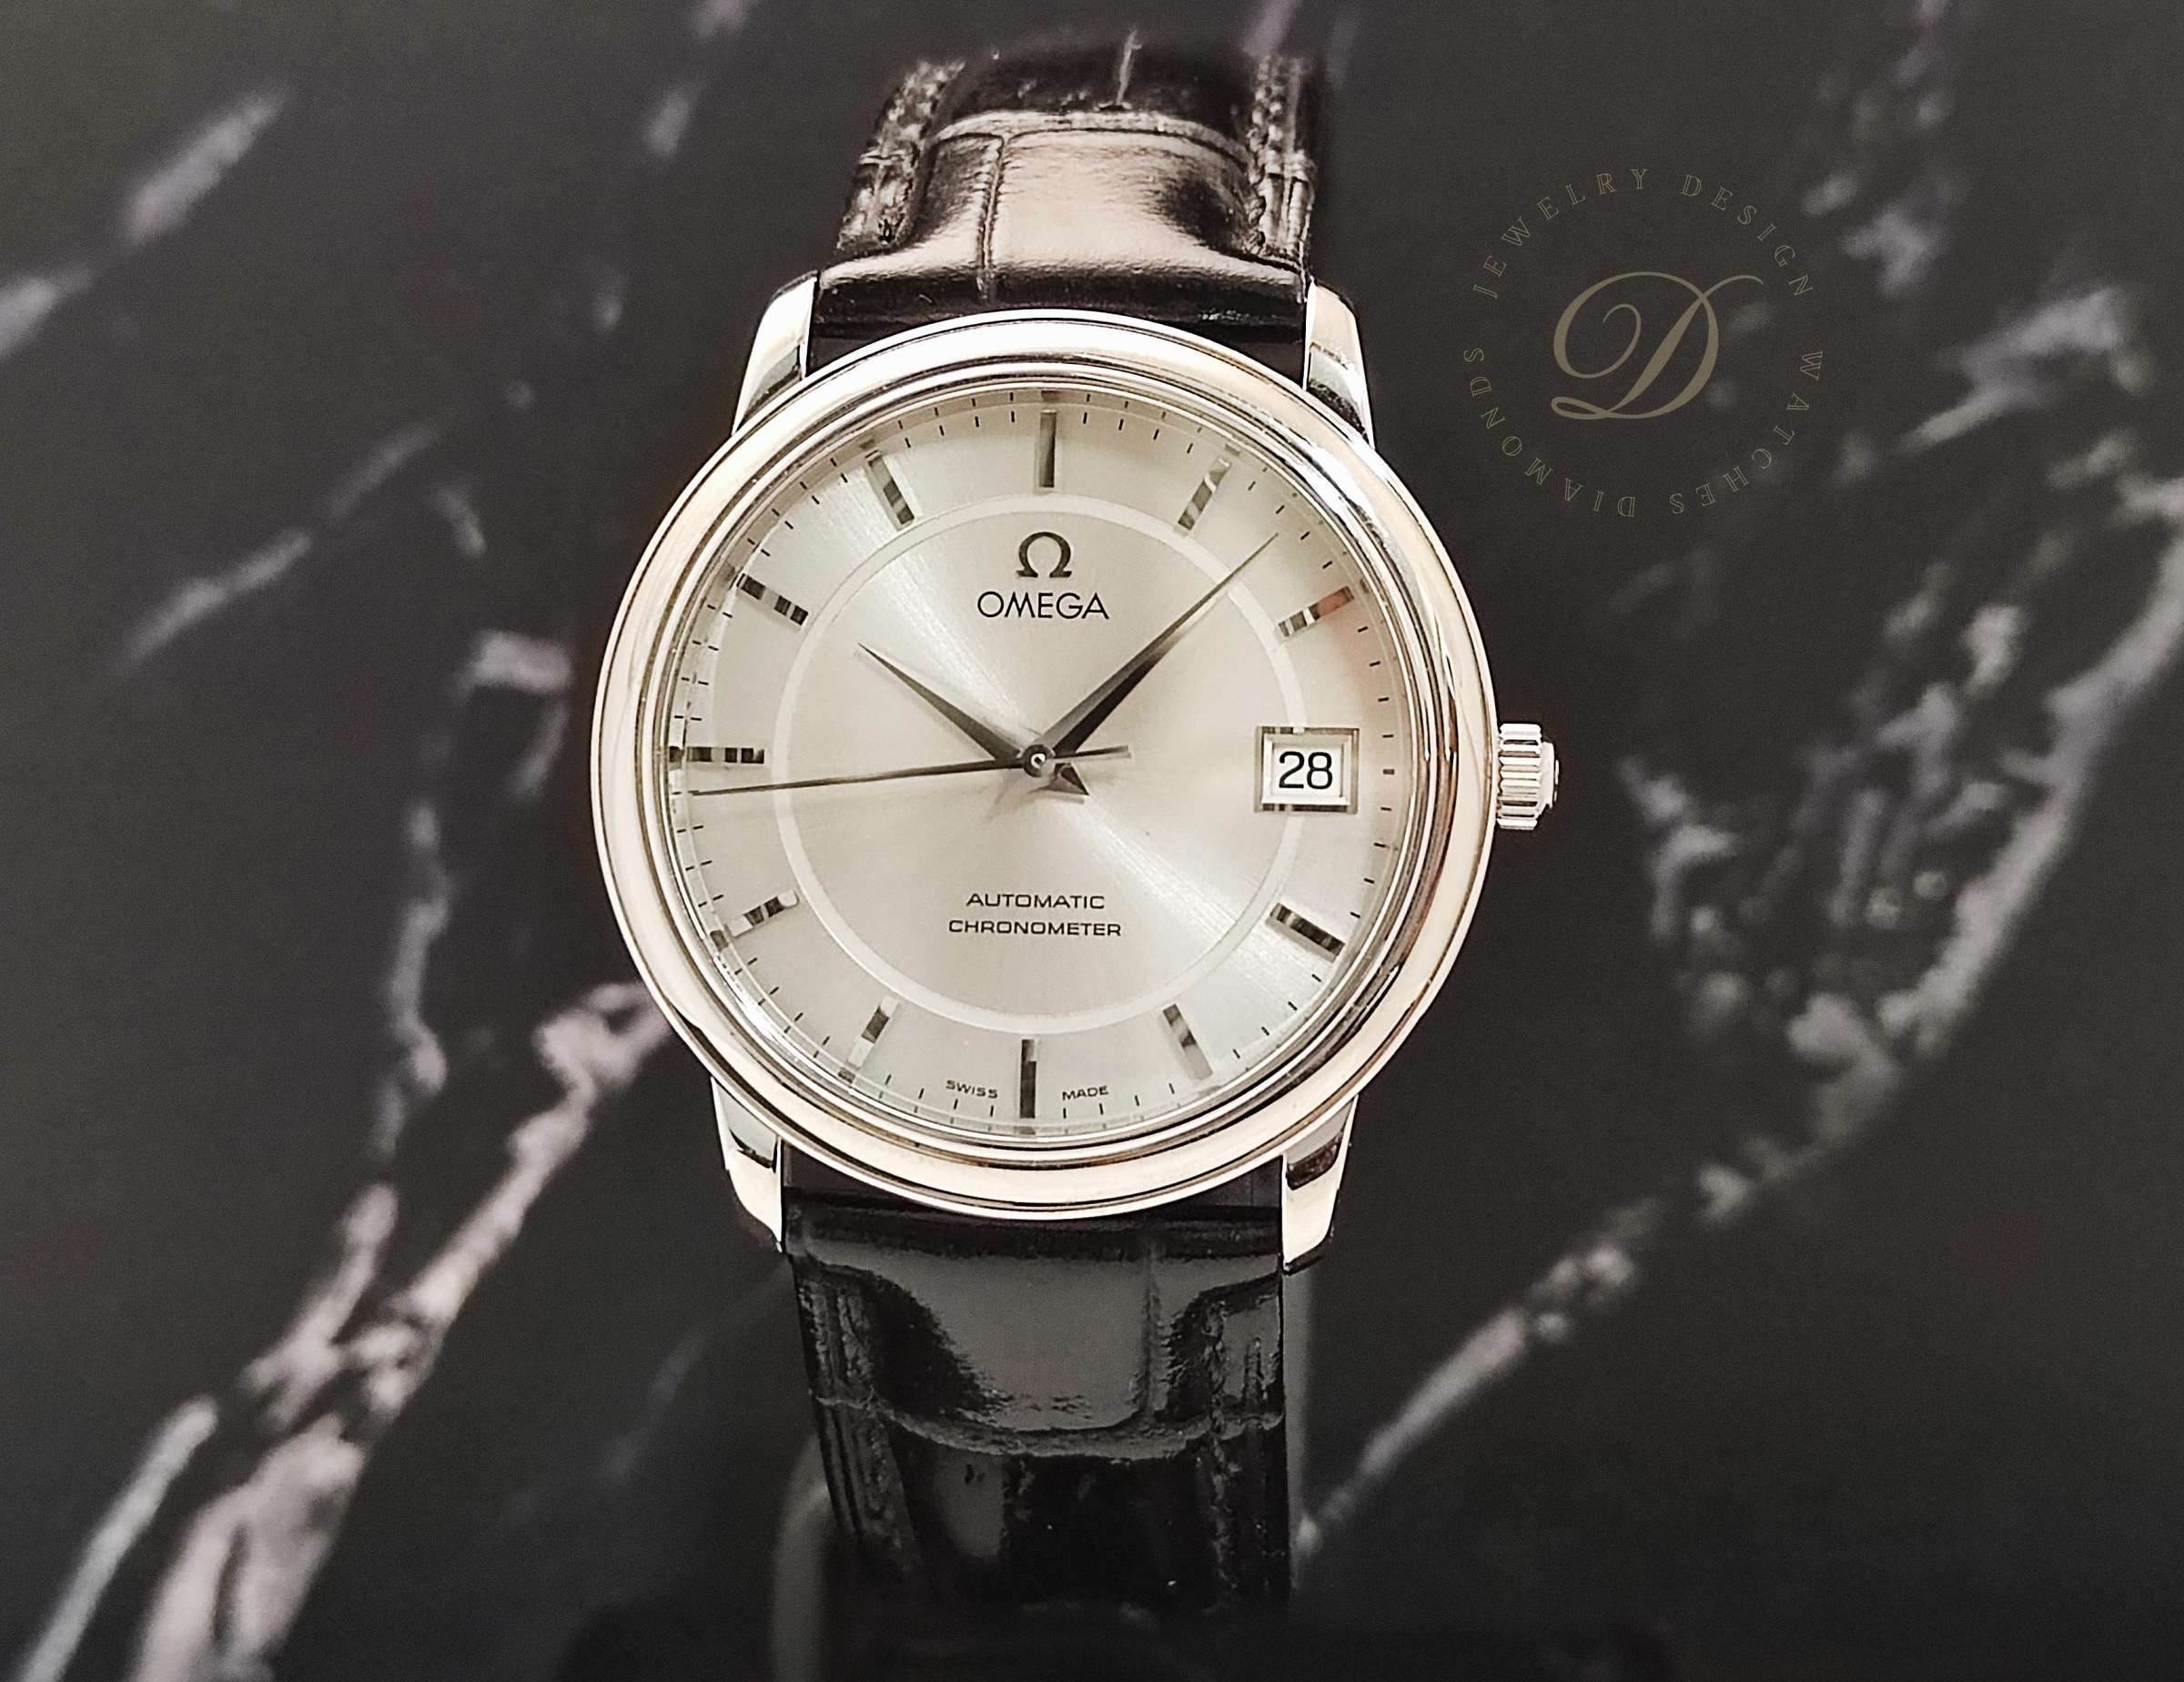 【低調的奢華】OMEGA 碟飛系列 正裝錶 自動上鍊 錶徑35mm 銀色面盤 絕版釋出 De Ville